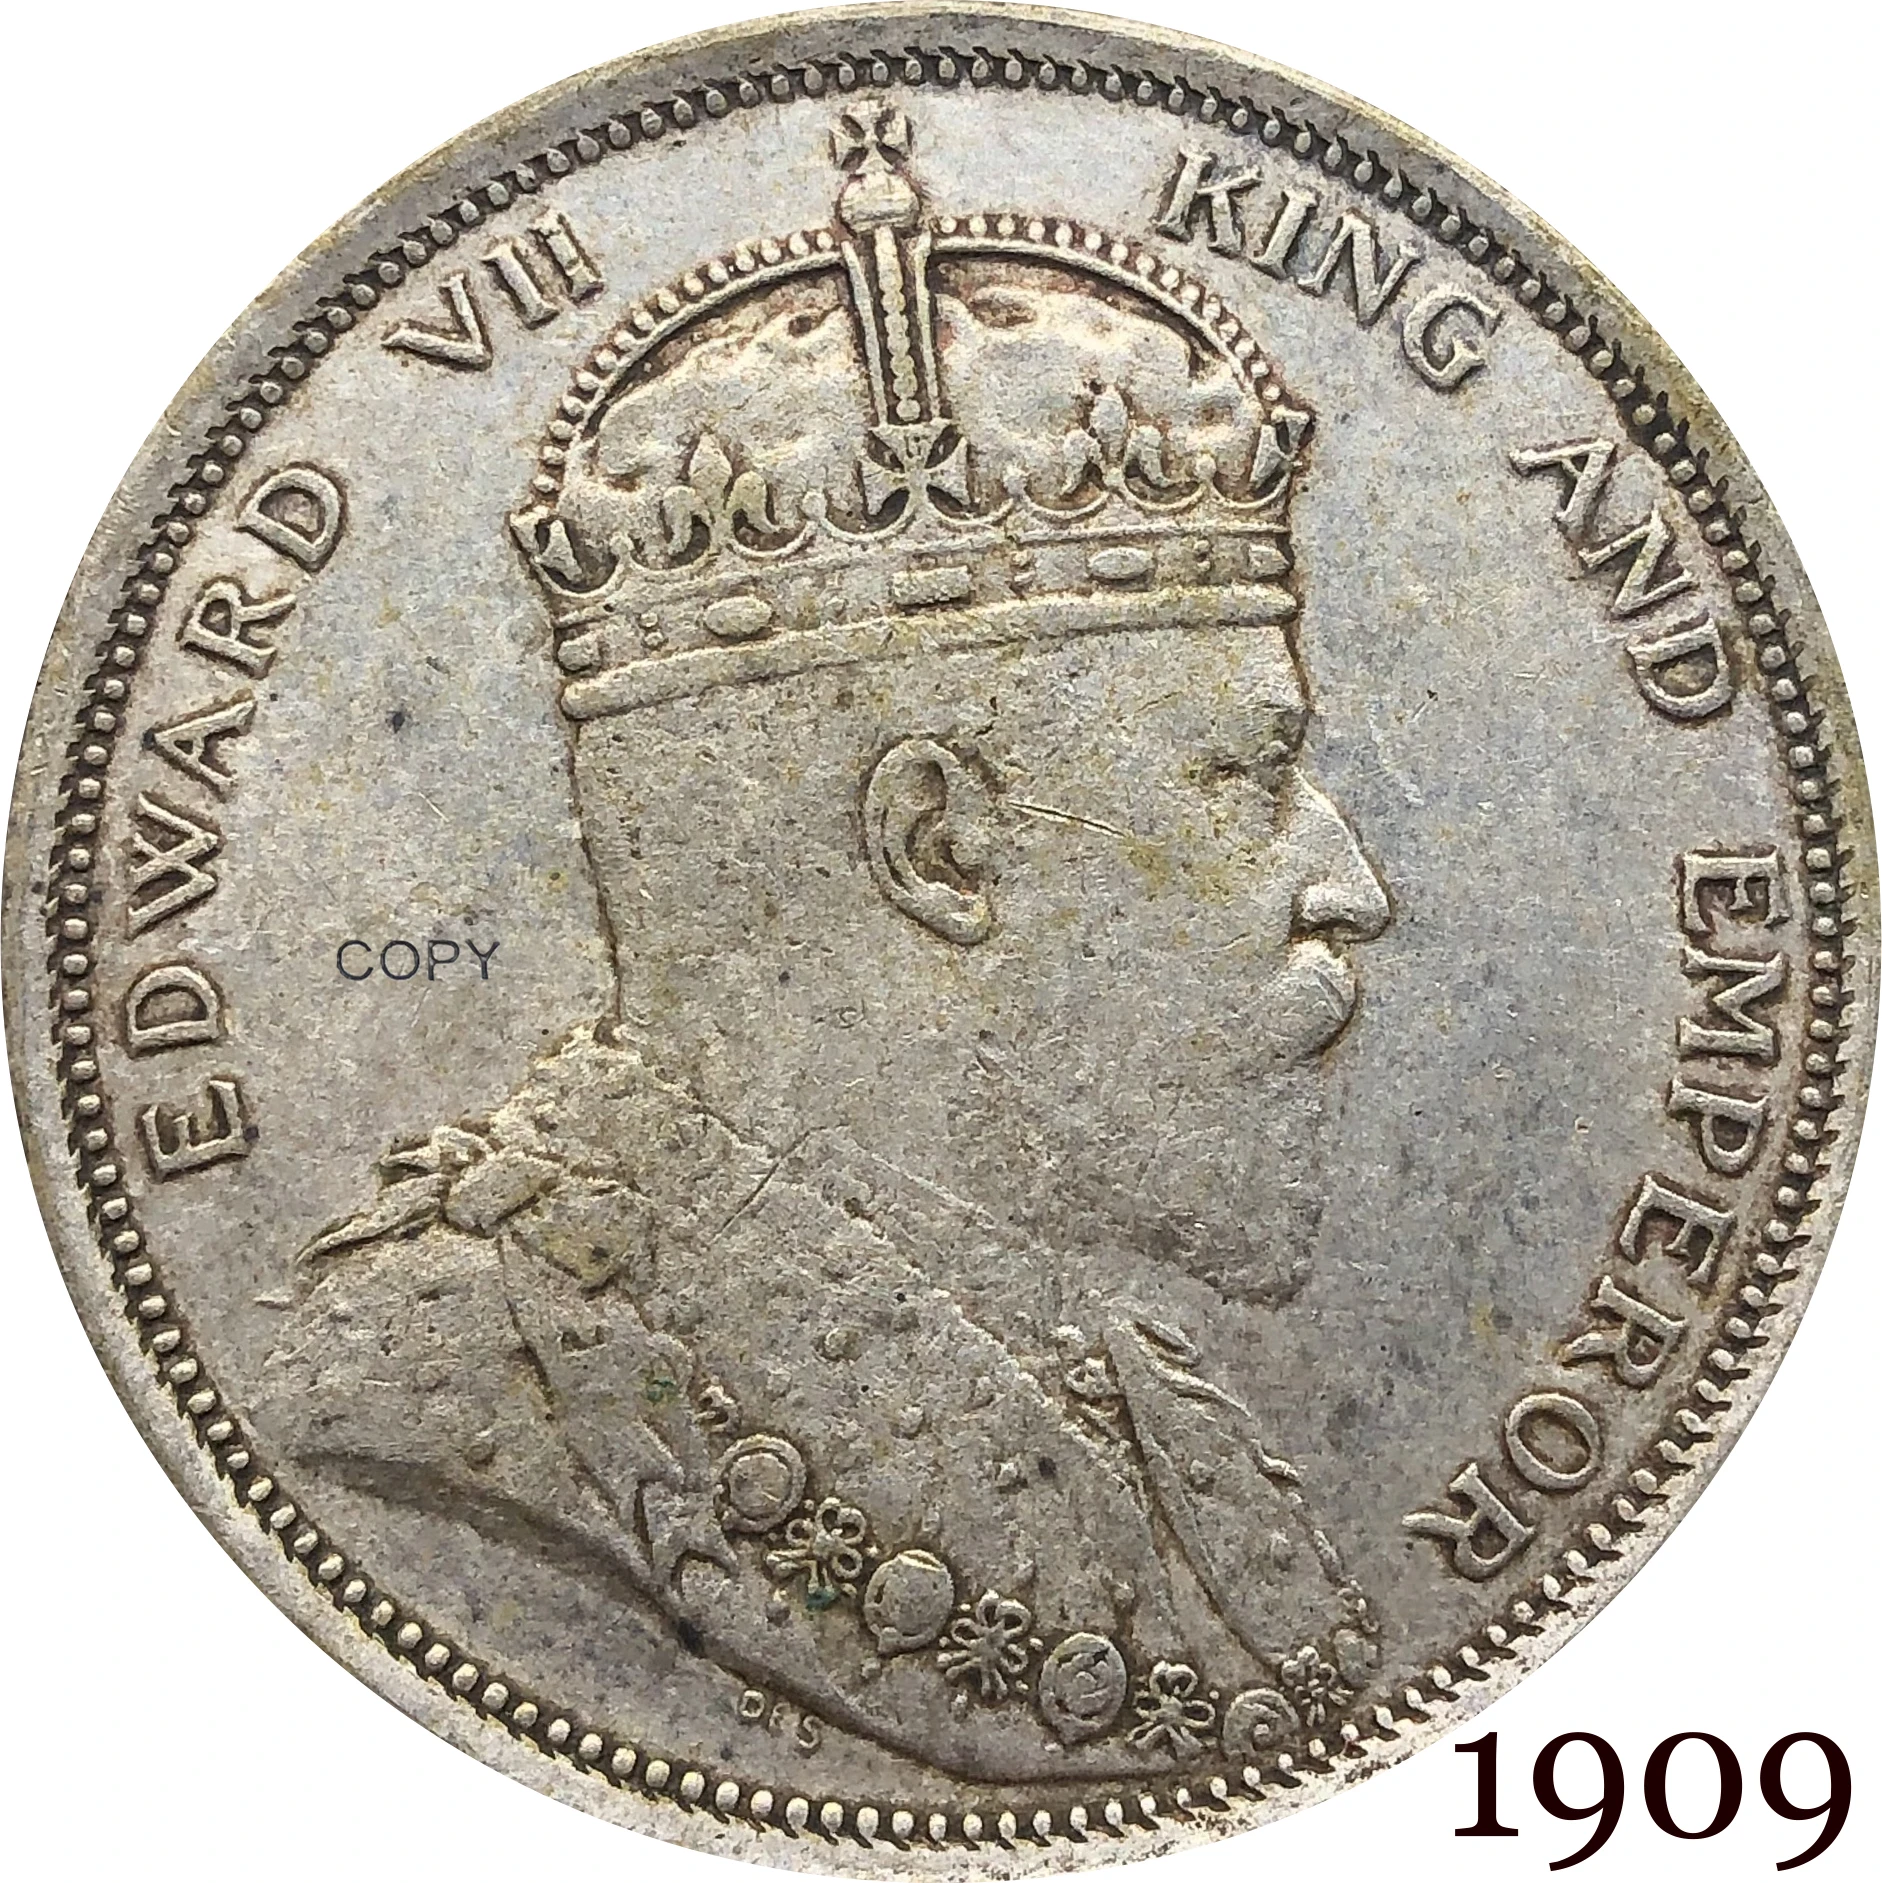 Малайзия 1909 1 доллар Эдвард VII король император кандареенс копия серебра монета